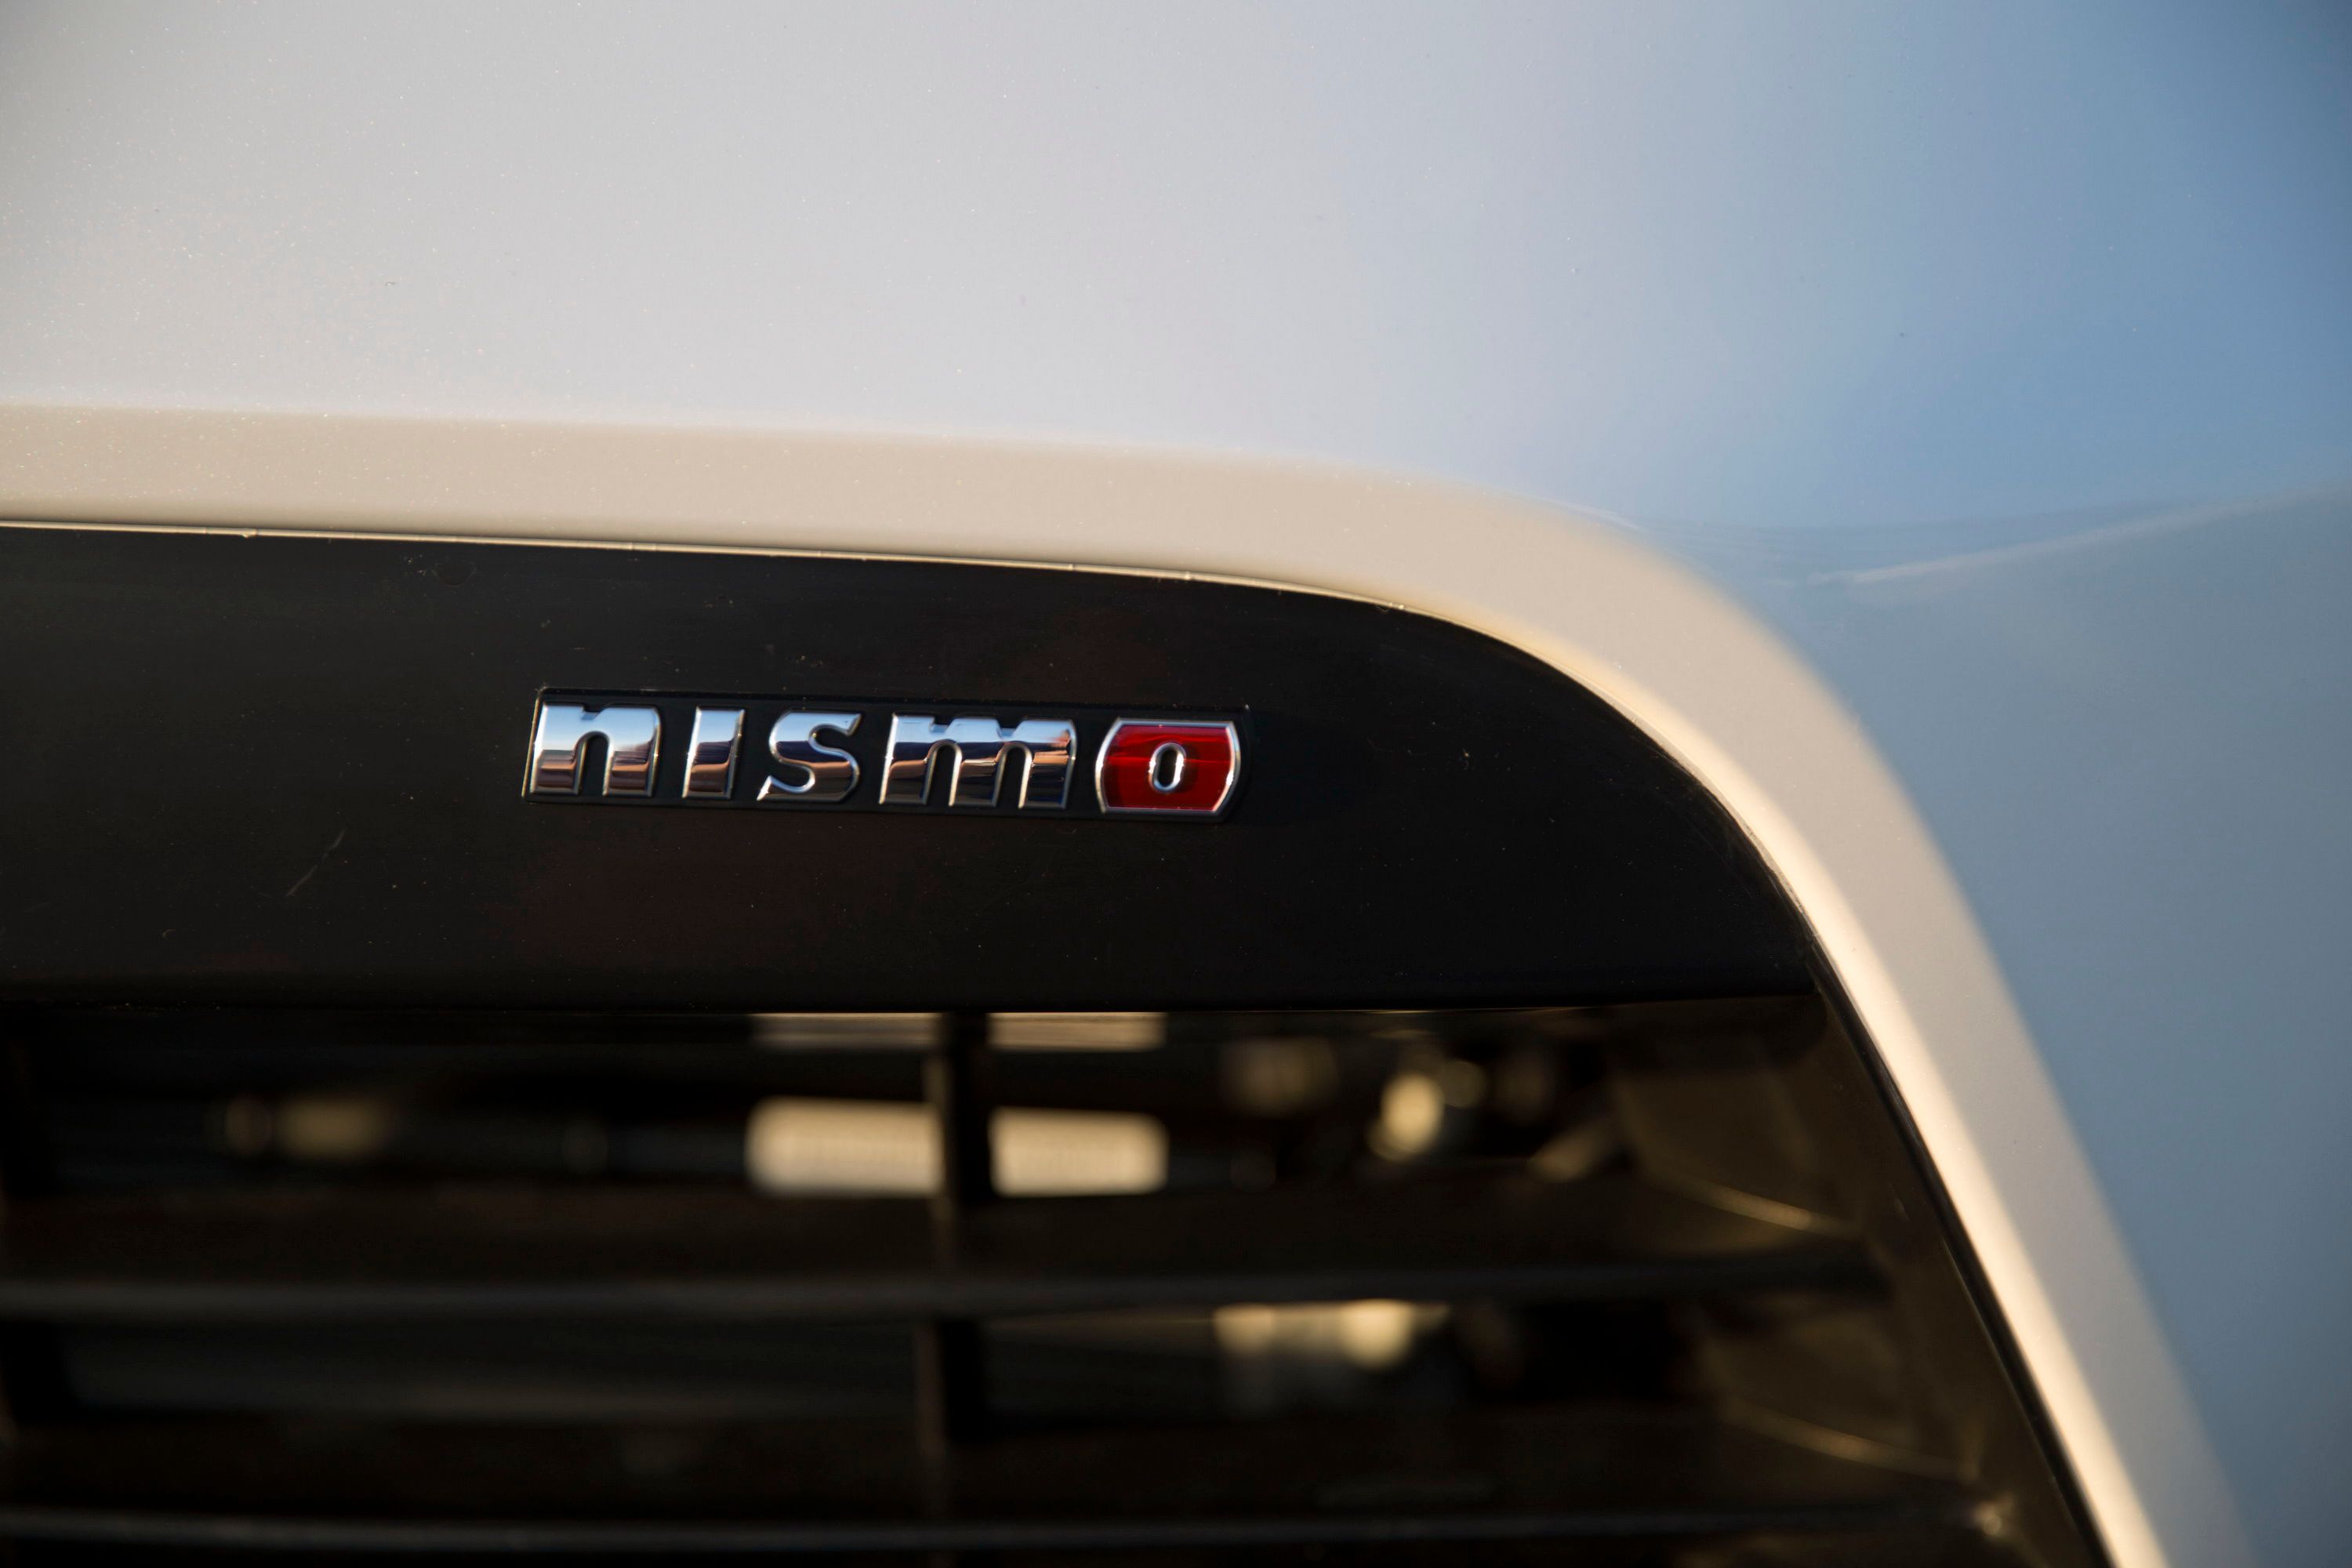 2015 - 2017 Nissan 370Z Nismo